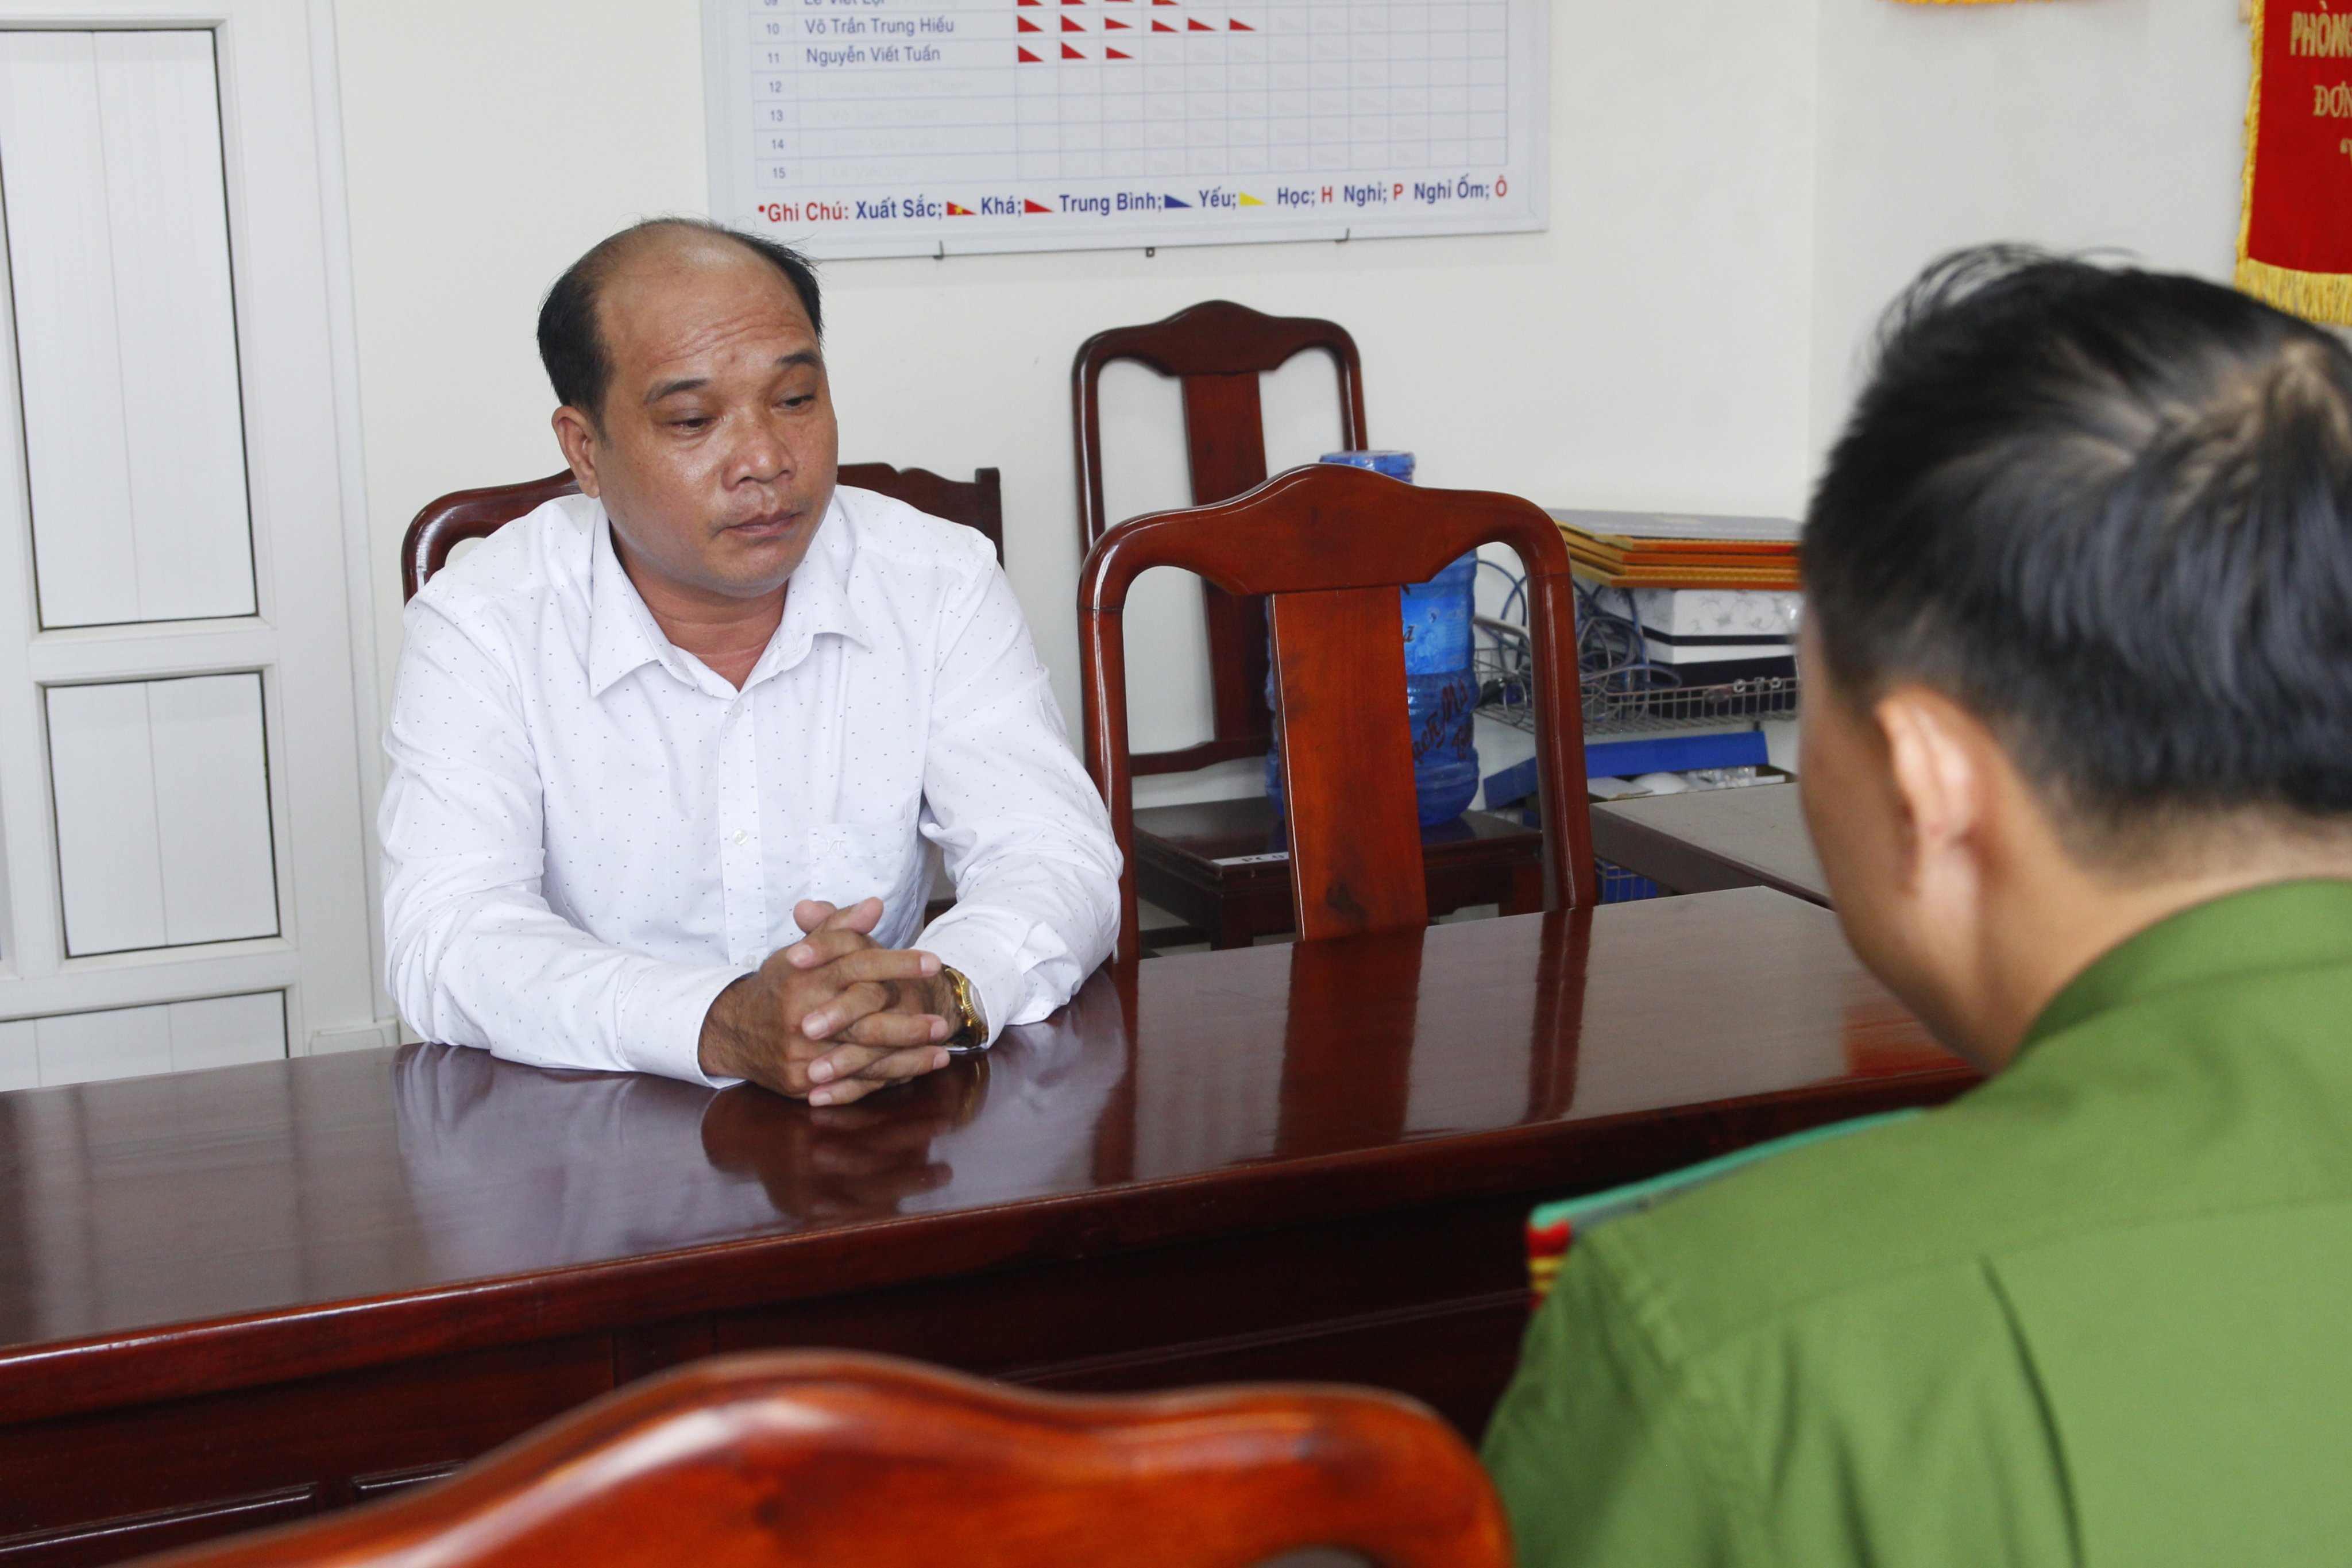 Công an tỉnh Thừa Thiên - Huế vừa ra quyết định khởi tố vụ án, khởi tố bị can, bắt tạm giam đối tượng Phan Văn Chinh về hành vi lừa đảo chiếm đoạt tài sản.